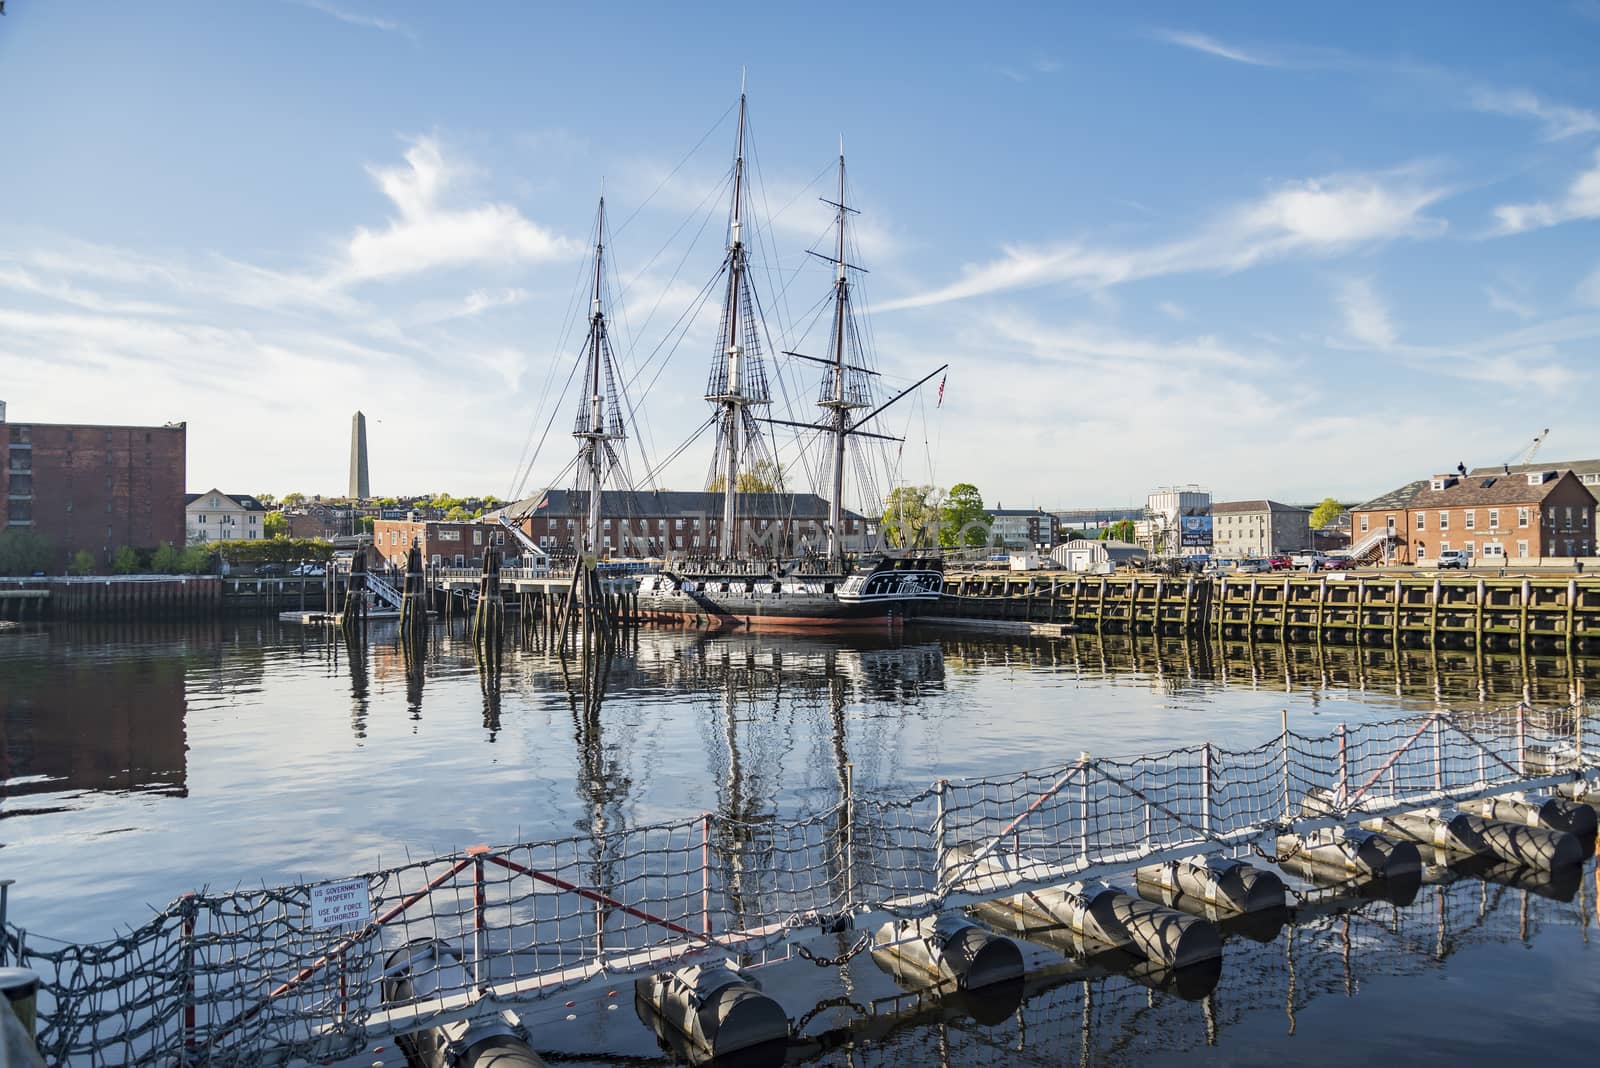 USS Constitution Boat in Boston by edella